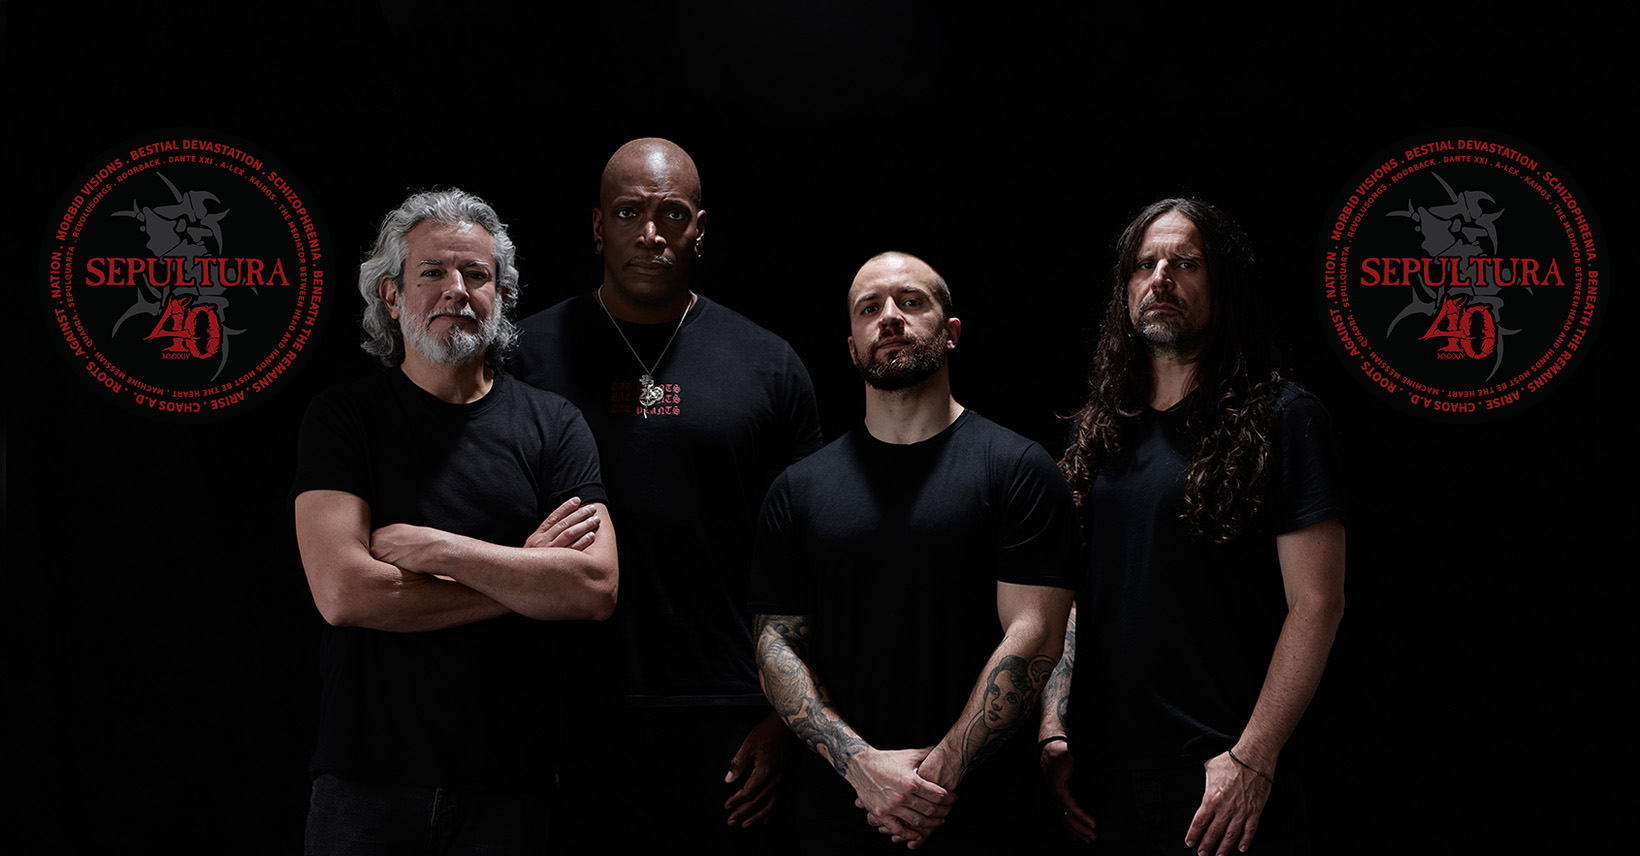 Após 40 anos de carreira, Sepultura anuncia turnê de despedida